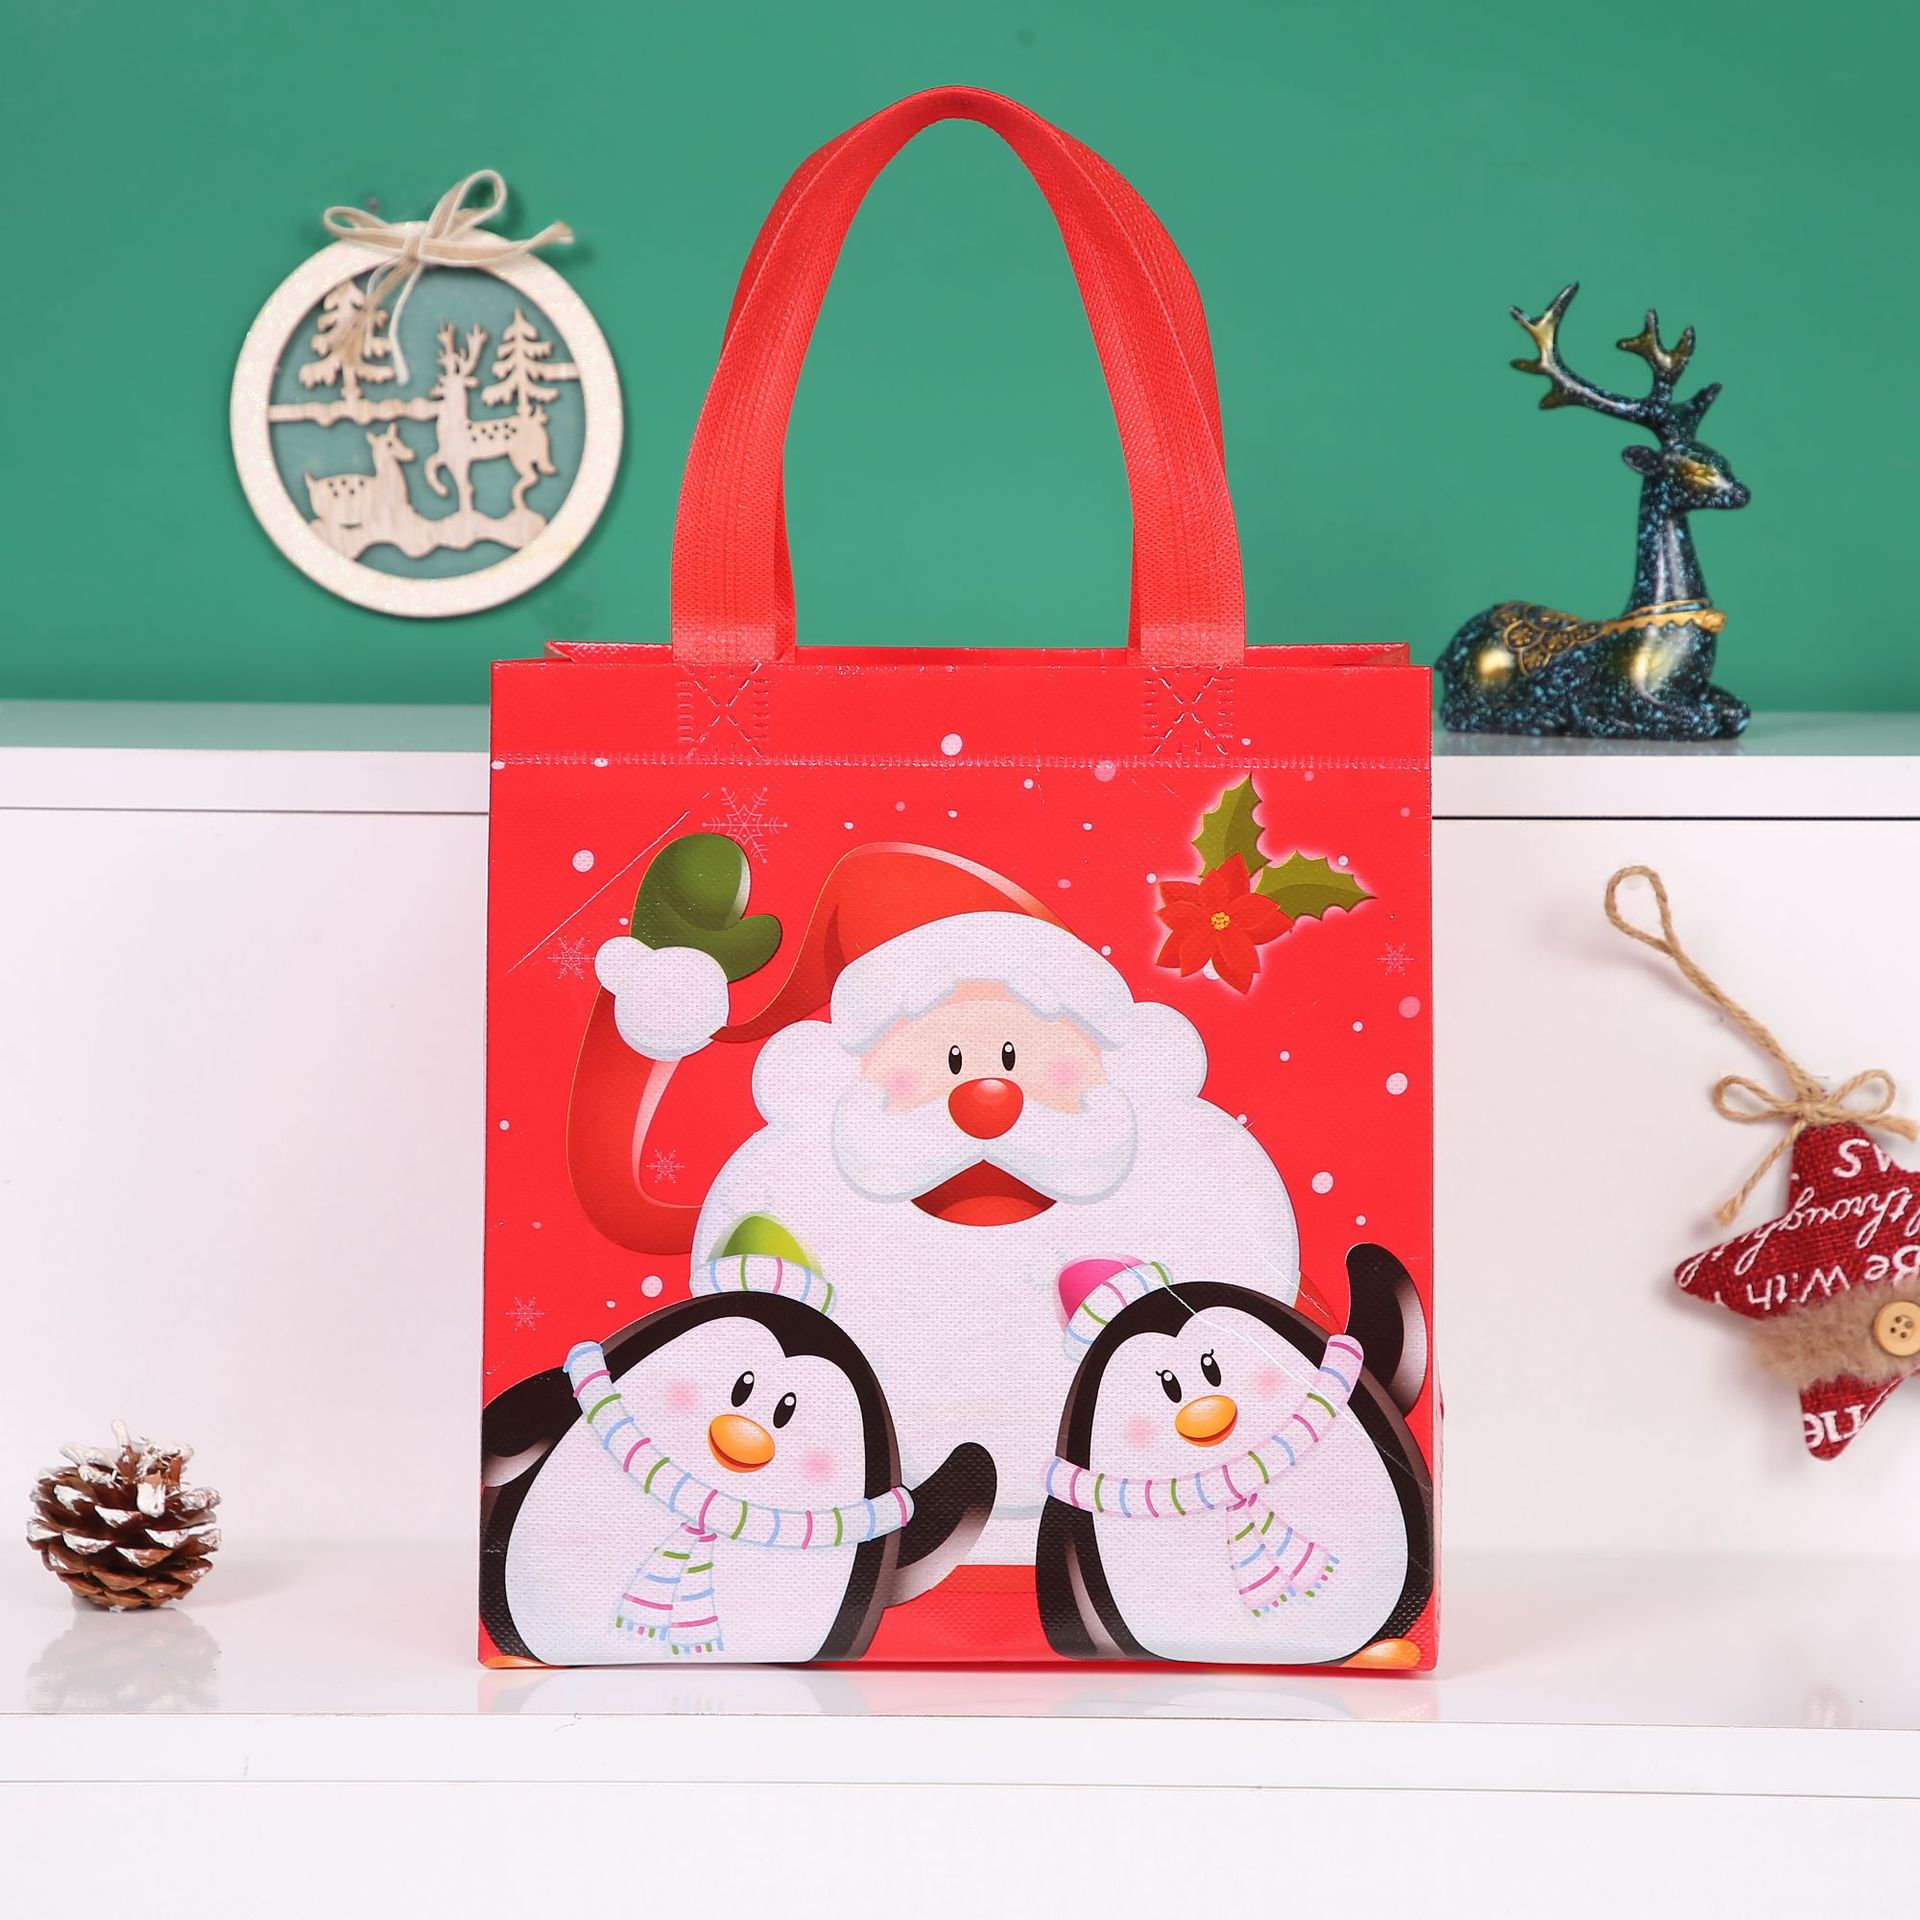 Christmas Non-Woven Bag Santa Claus Handbag Shopping Gift Bag Large Buggy Bag Student Supplies Bag New